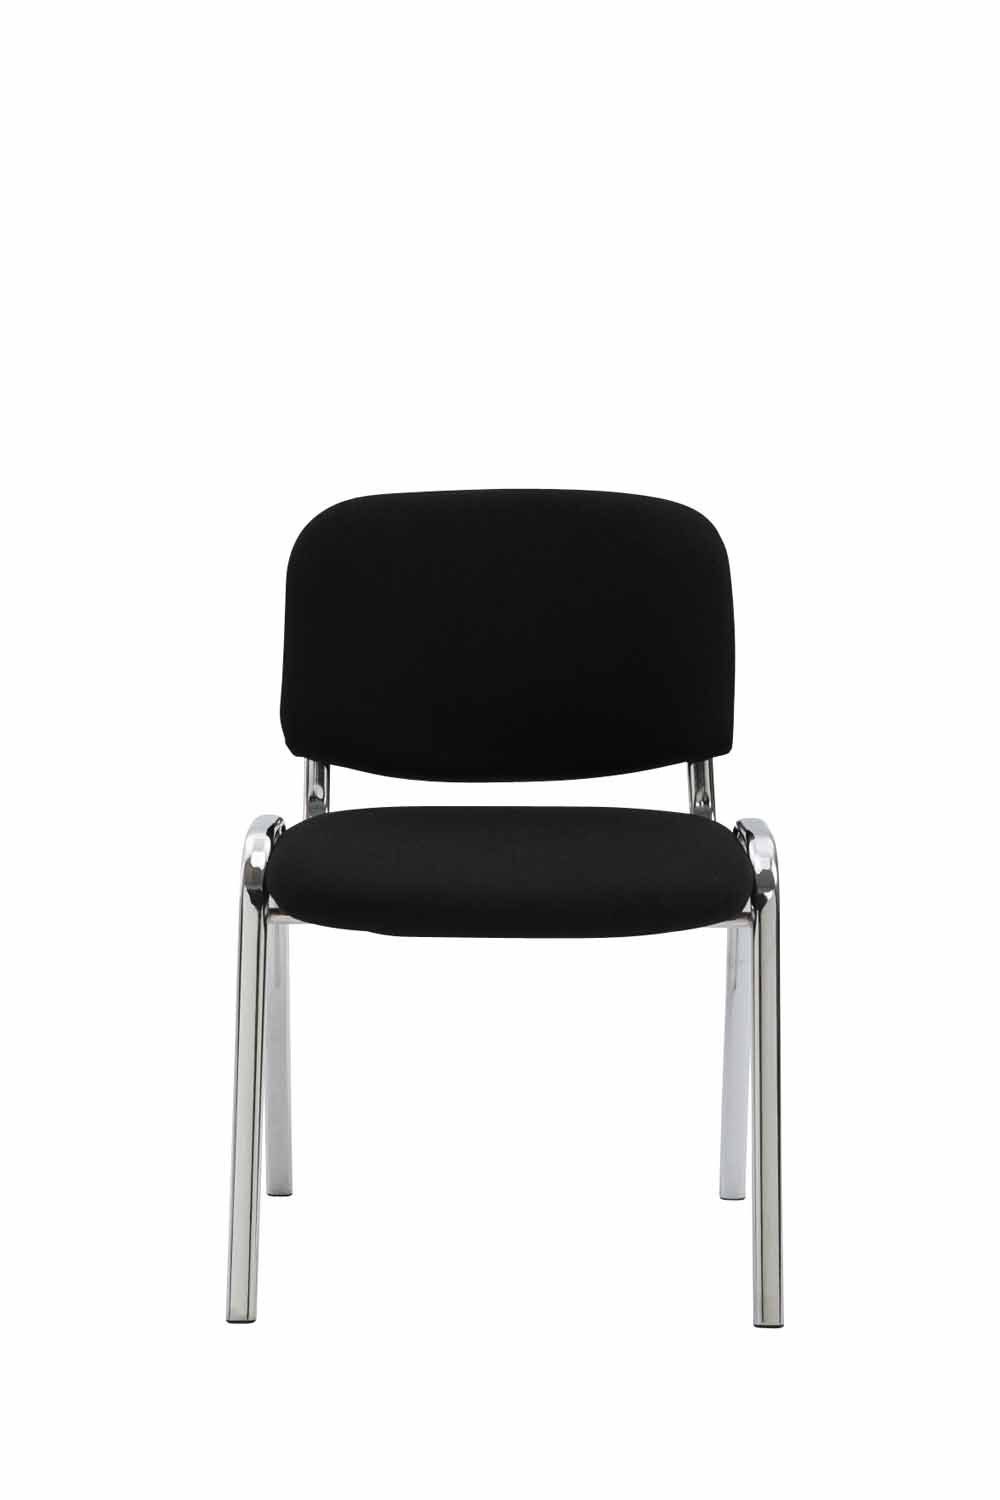 Polsterung - chrom Stoff - Konferenzstuhl Metall Besucherstuhl schwarz Warteraumstuhl - Sitzfläche: (Besprechungsstuhl hochwertiger mit Keen Gestell: Messestuhl), - TPFLiving